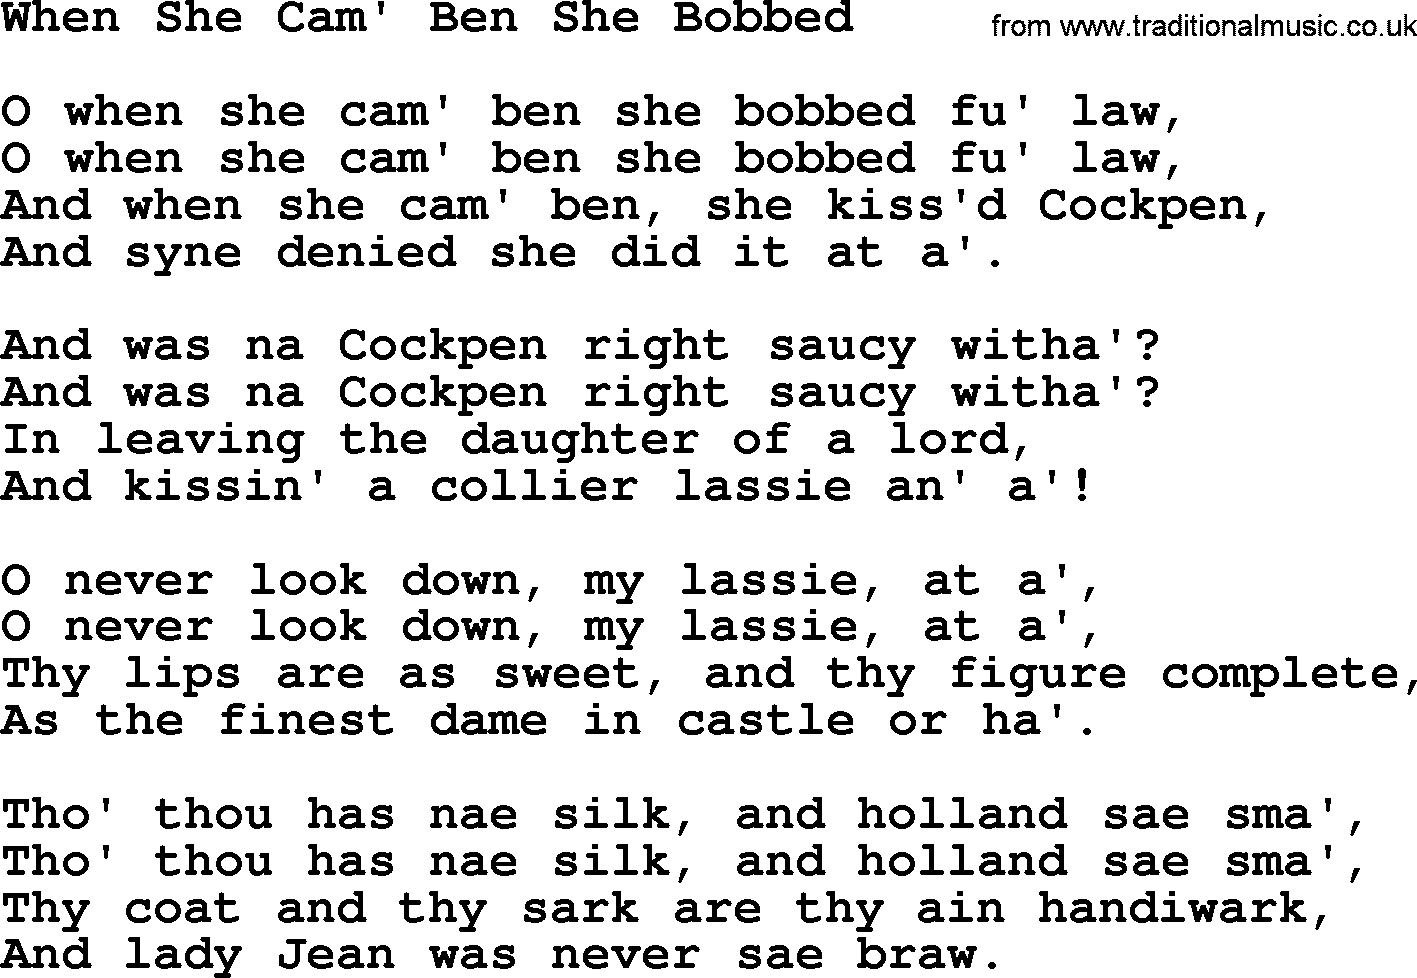 Robert Burns Songs & Lyrics: When She Cam' Ben She Bobbed